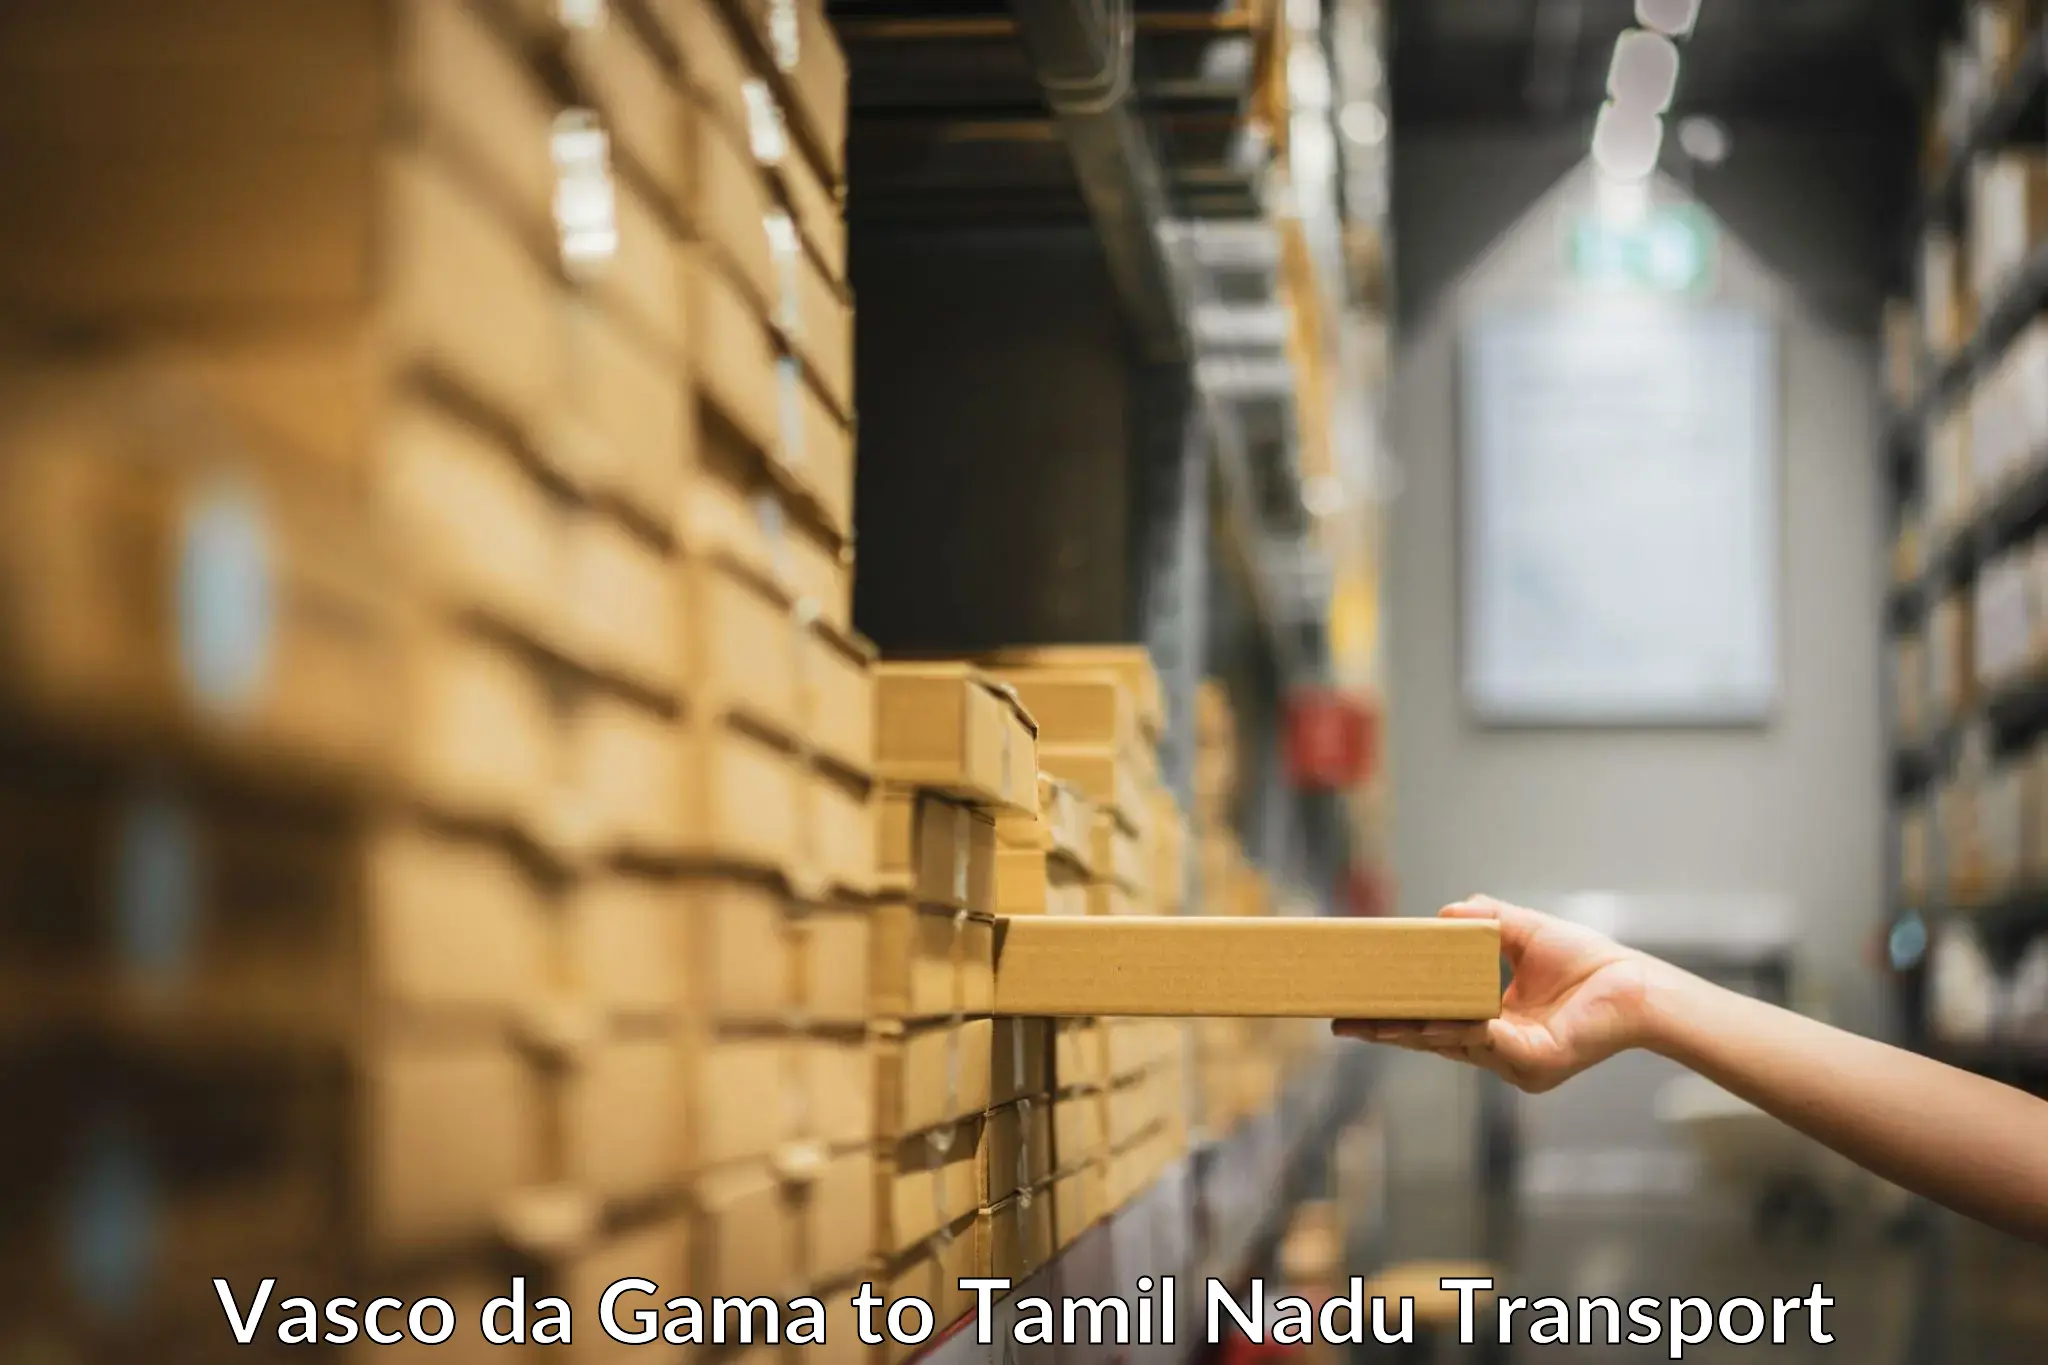 Cargo train transport services Vasco da Gama to The Gandhigram Rural Institute